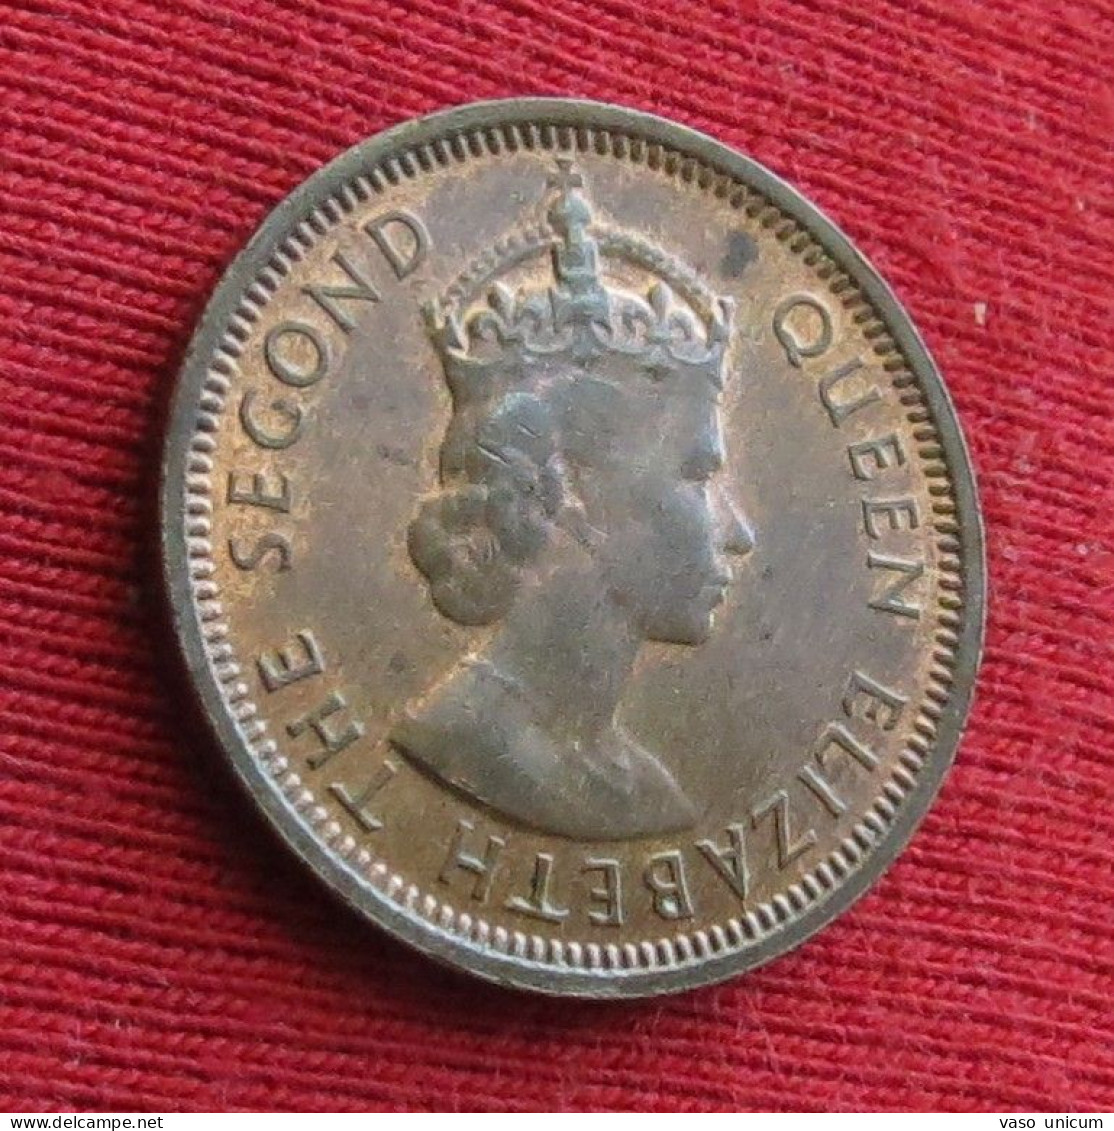 British Honduras 1 Cent 1954   Belize - Belize